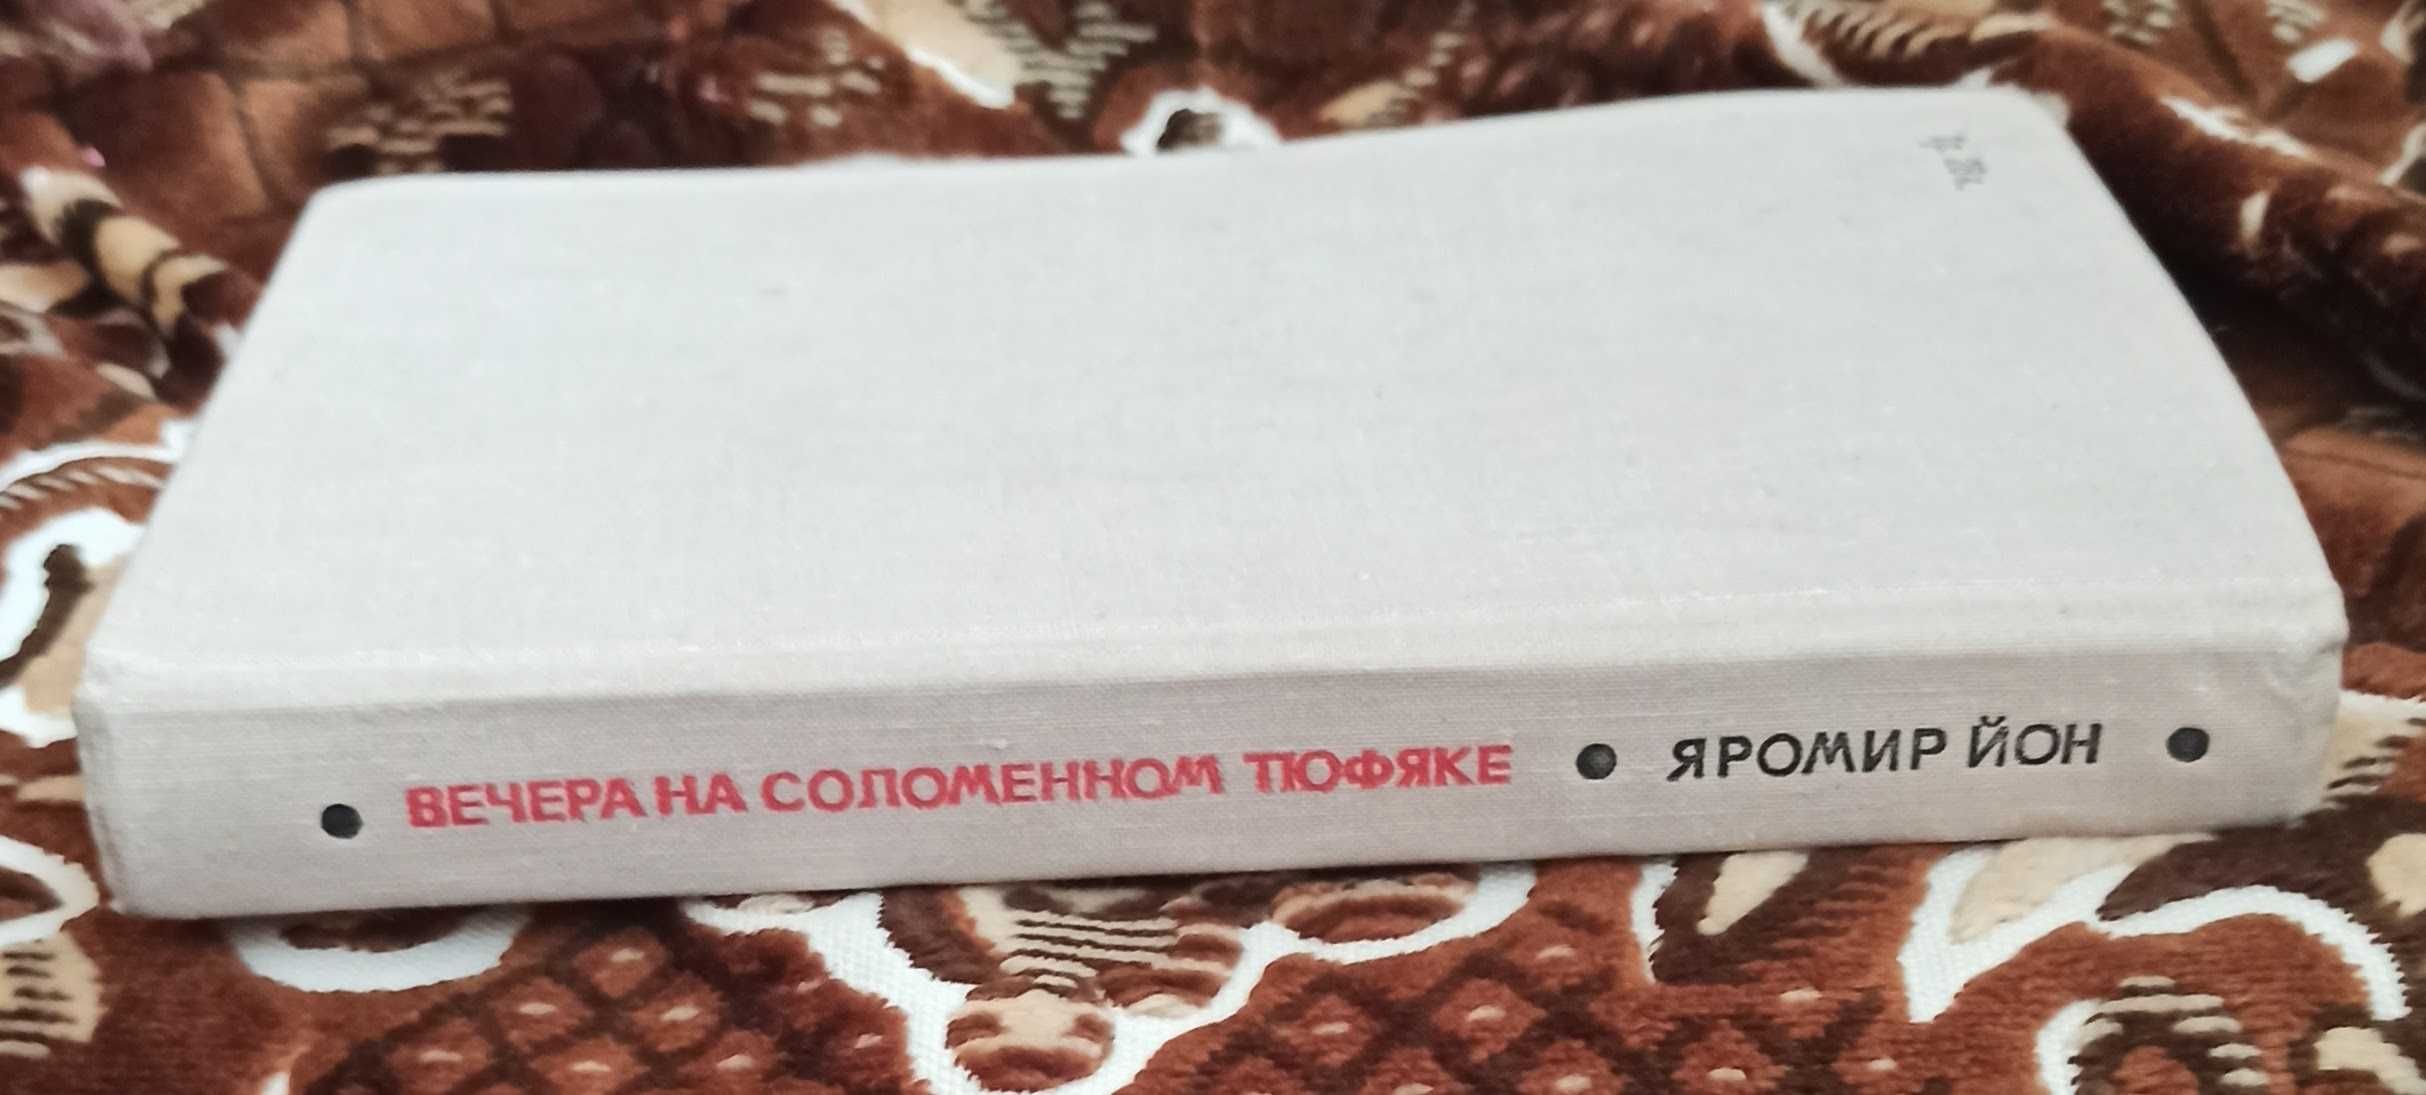 Книга Яромир Йон "Вечера на соломенном тюфяке" 1973 рік видання